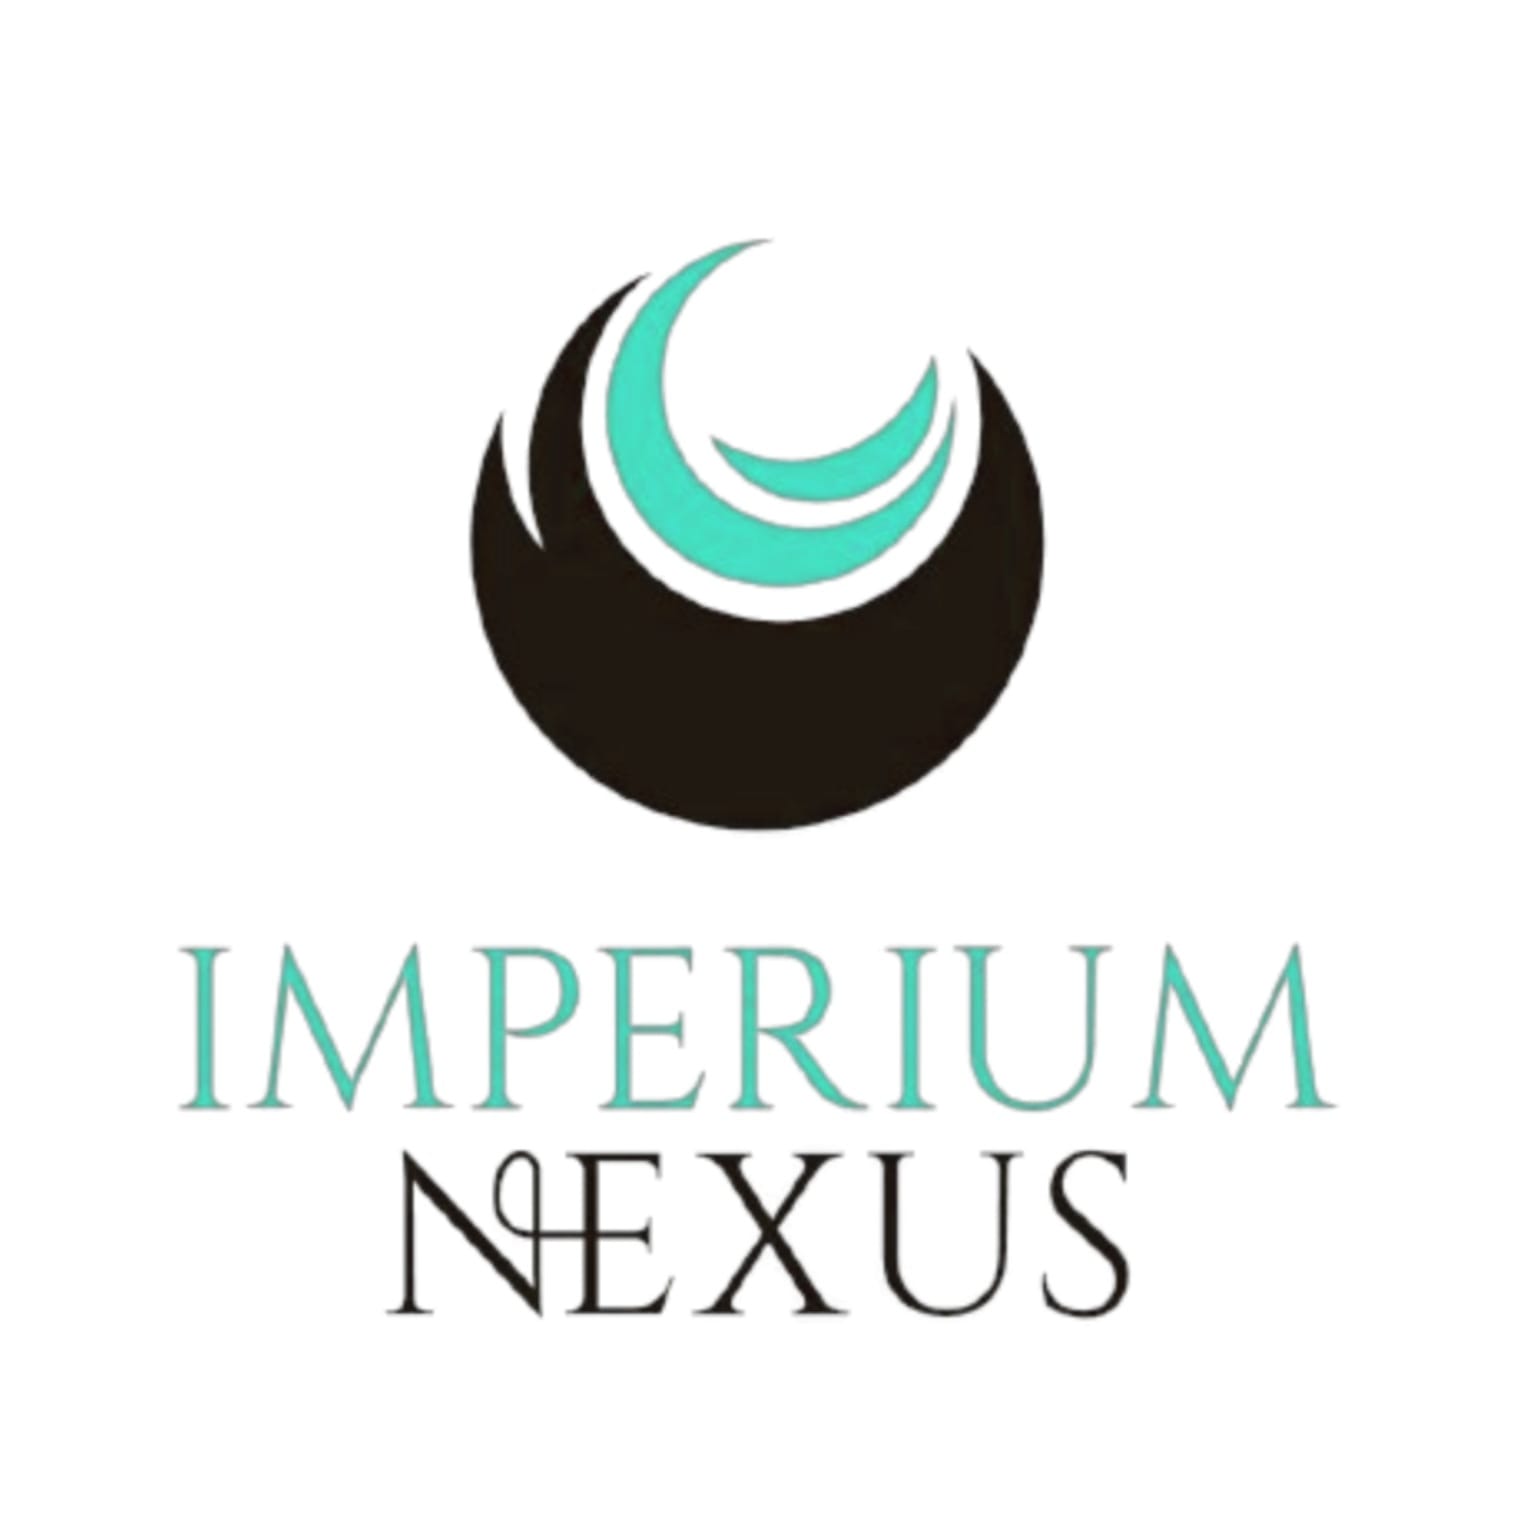 Imperium nexus